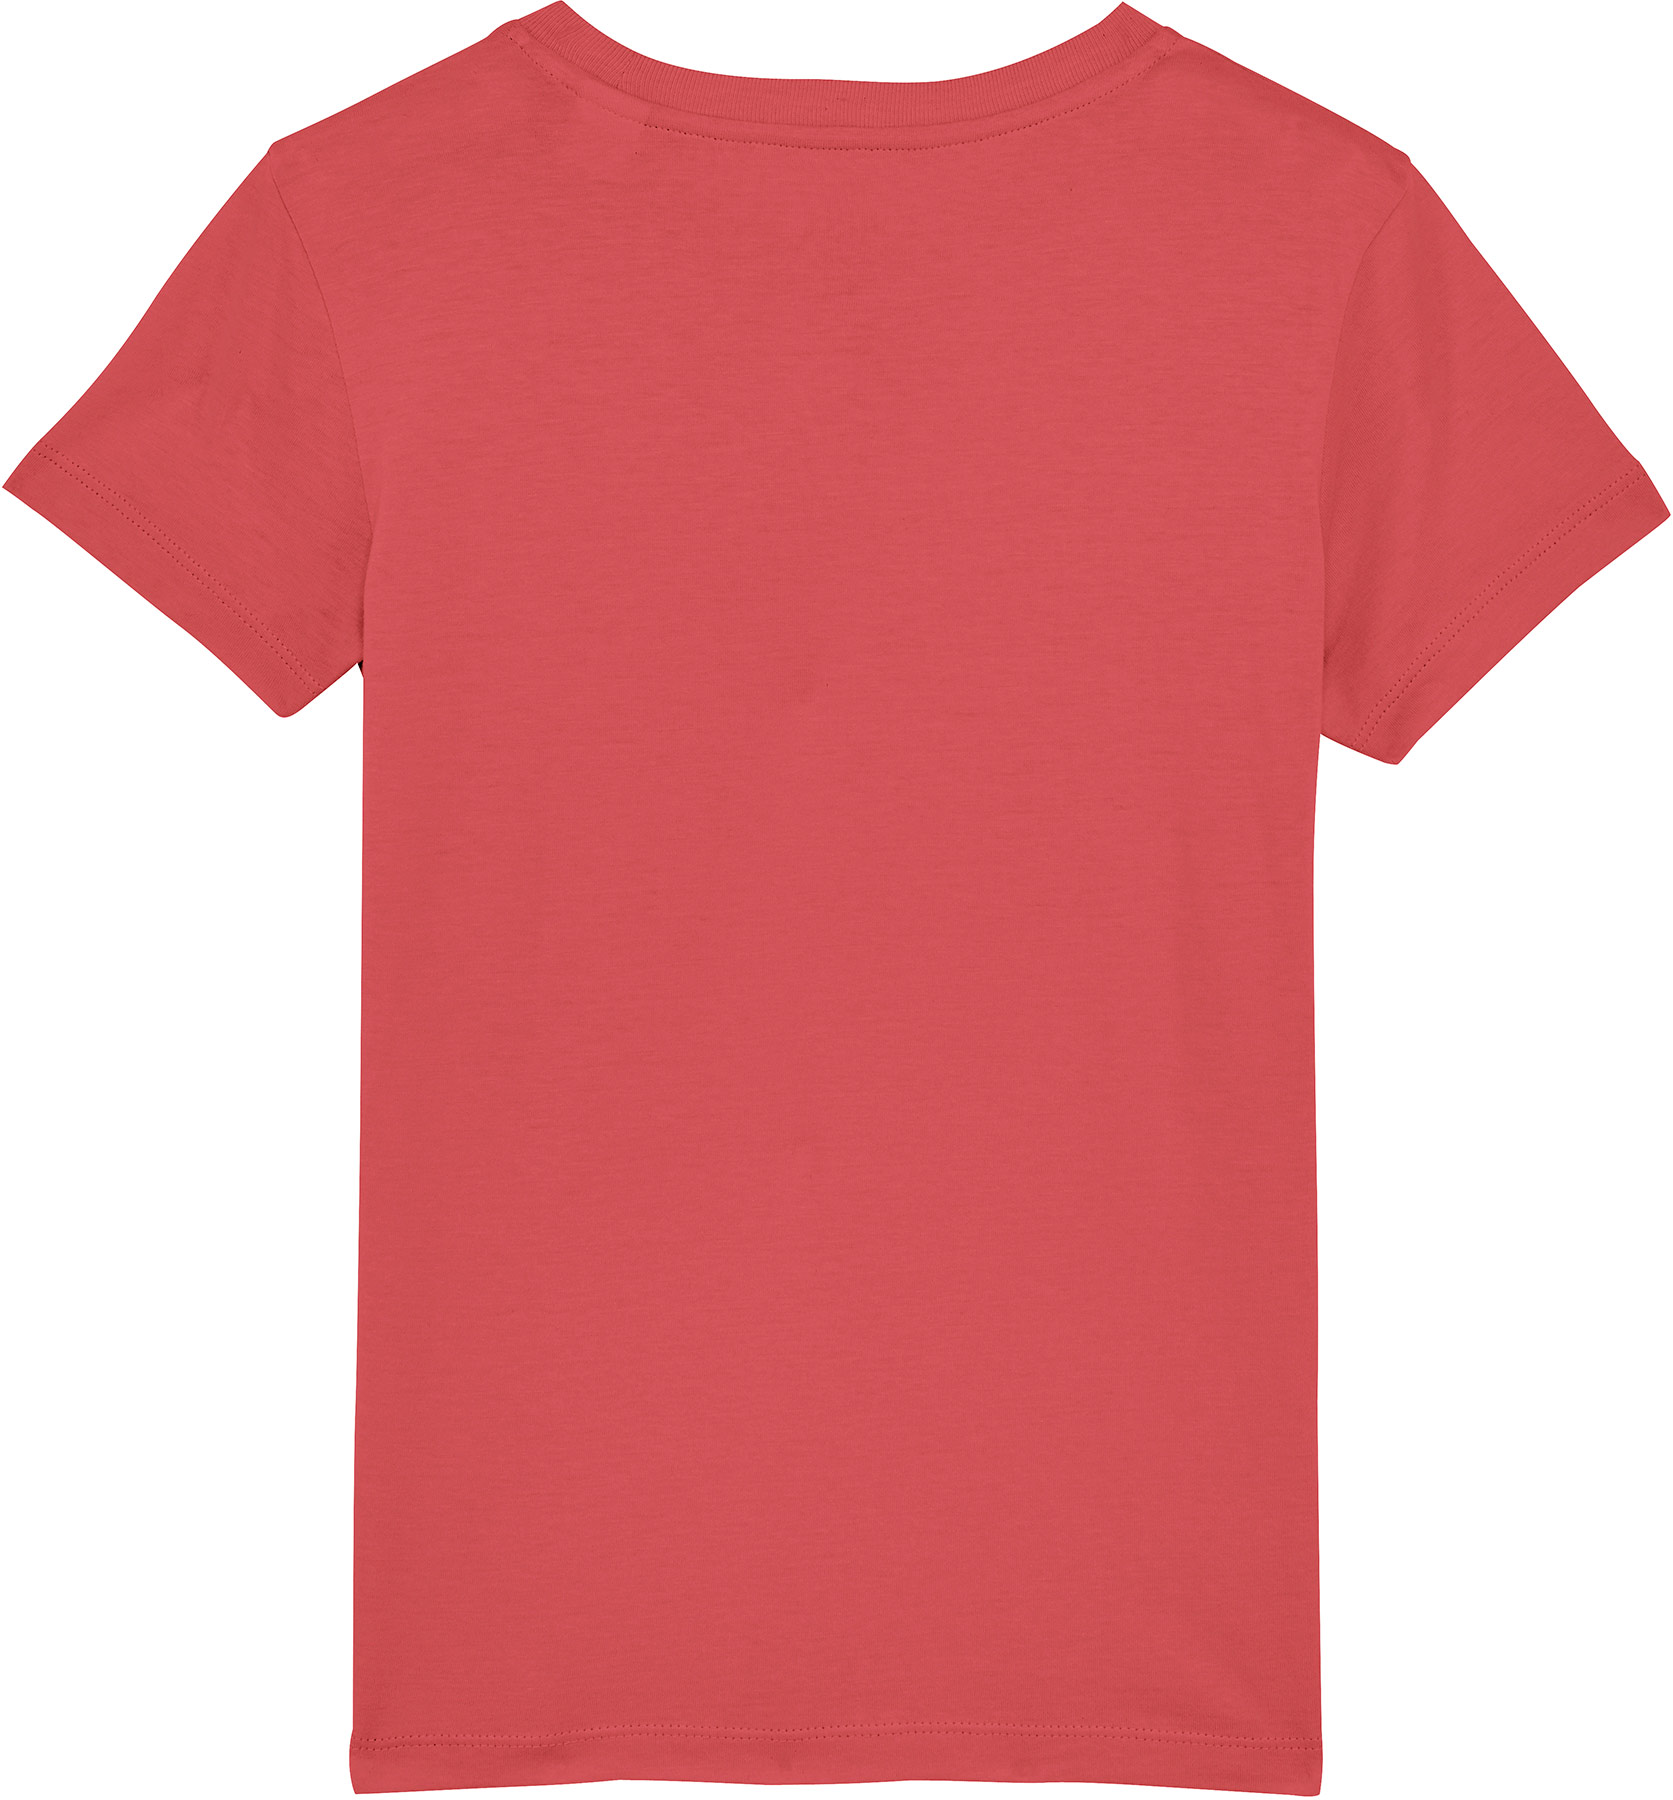 Rundhals-Shirt mit kurzen Ärmeln | Kids | Carmine Red